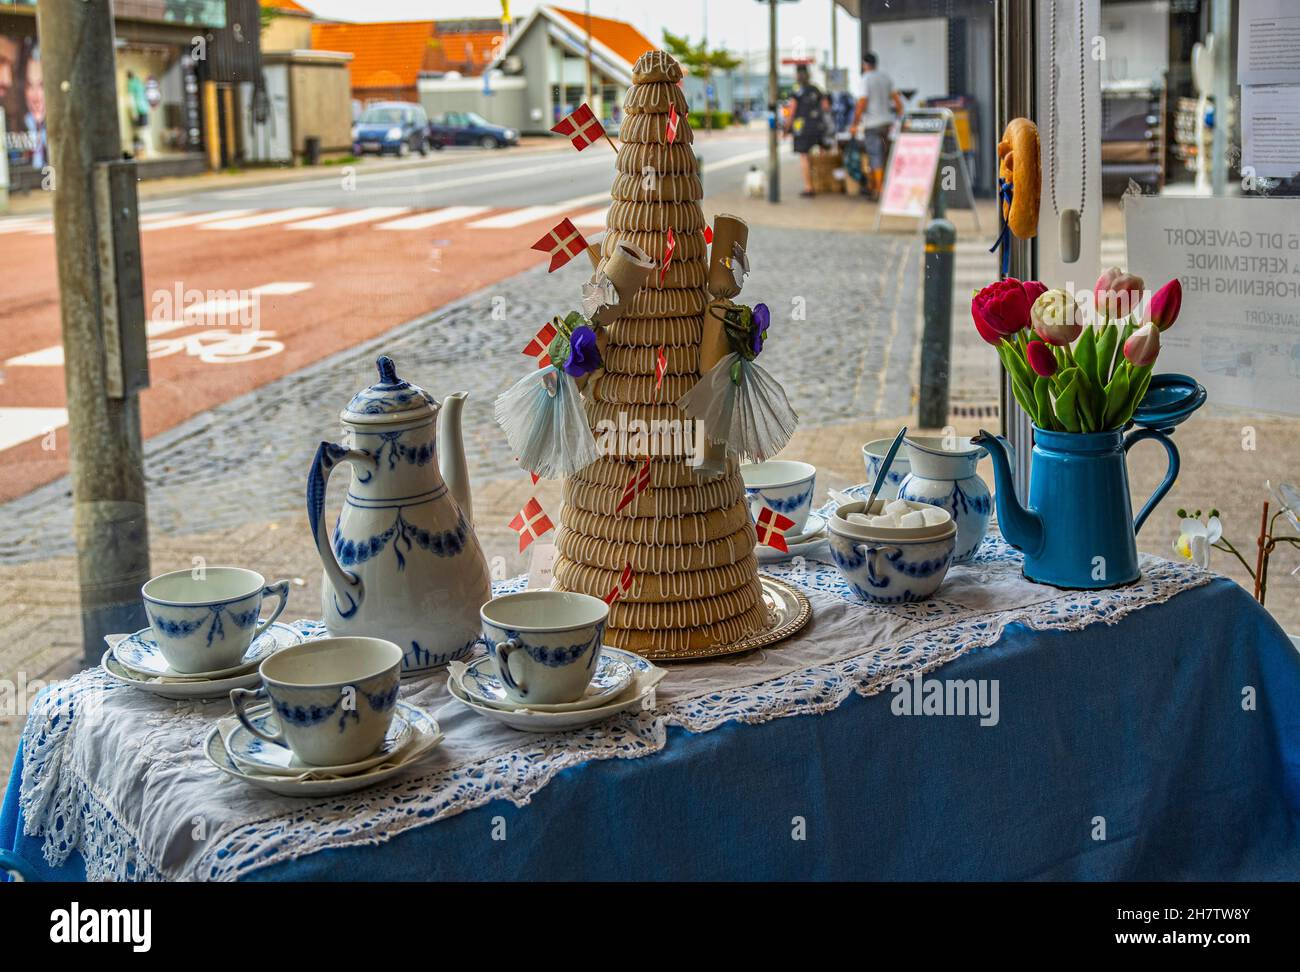 Schaufenster einer Bäckerei in der Stadt Kerteminde. Typisch dänisches Porzellan und Brotdekorationen. Kerteminde, Fünen (Fyn), Dänemark, Europa Stockfoto